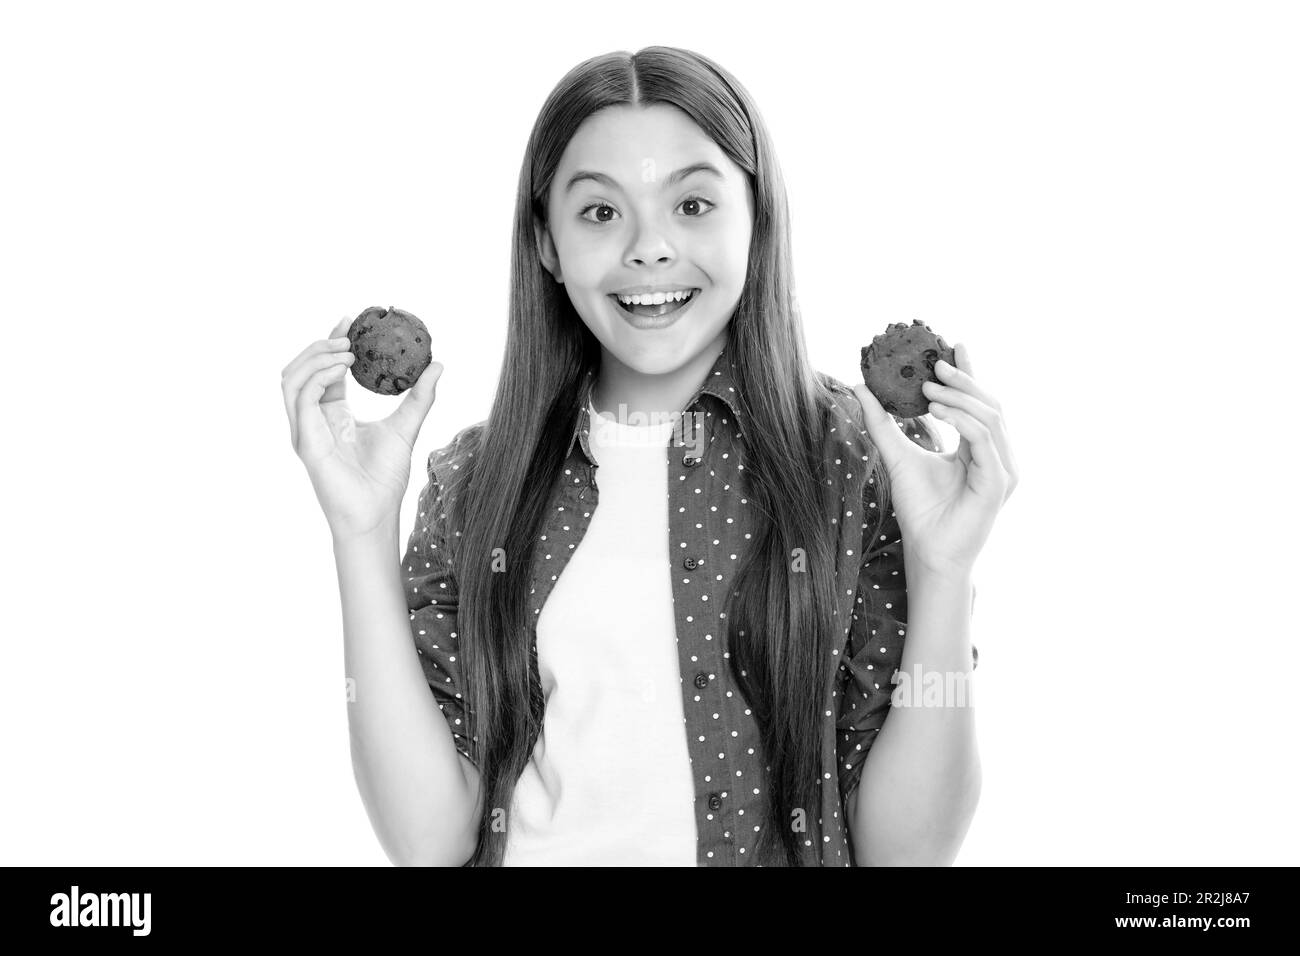 Mädchen und Kekse. Teen girl eating Cookies, Snack für Schüler. Kind mit Dessert Bäckerei Porträt von glücklich lächelnd Teenager-Kind Mädchen essen cooki Stockfoto